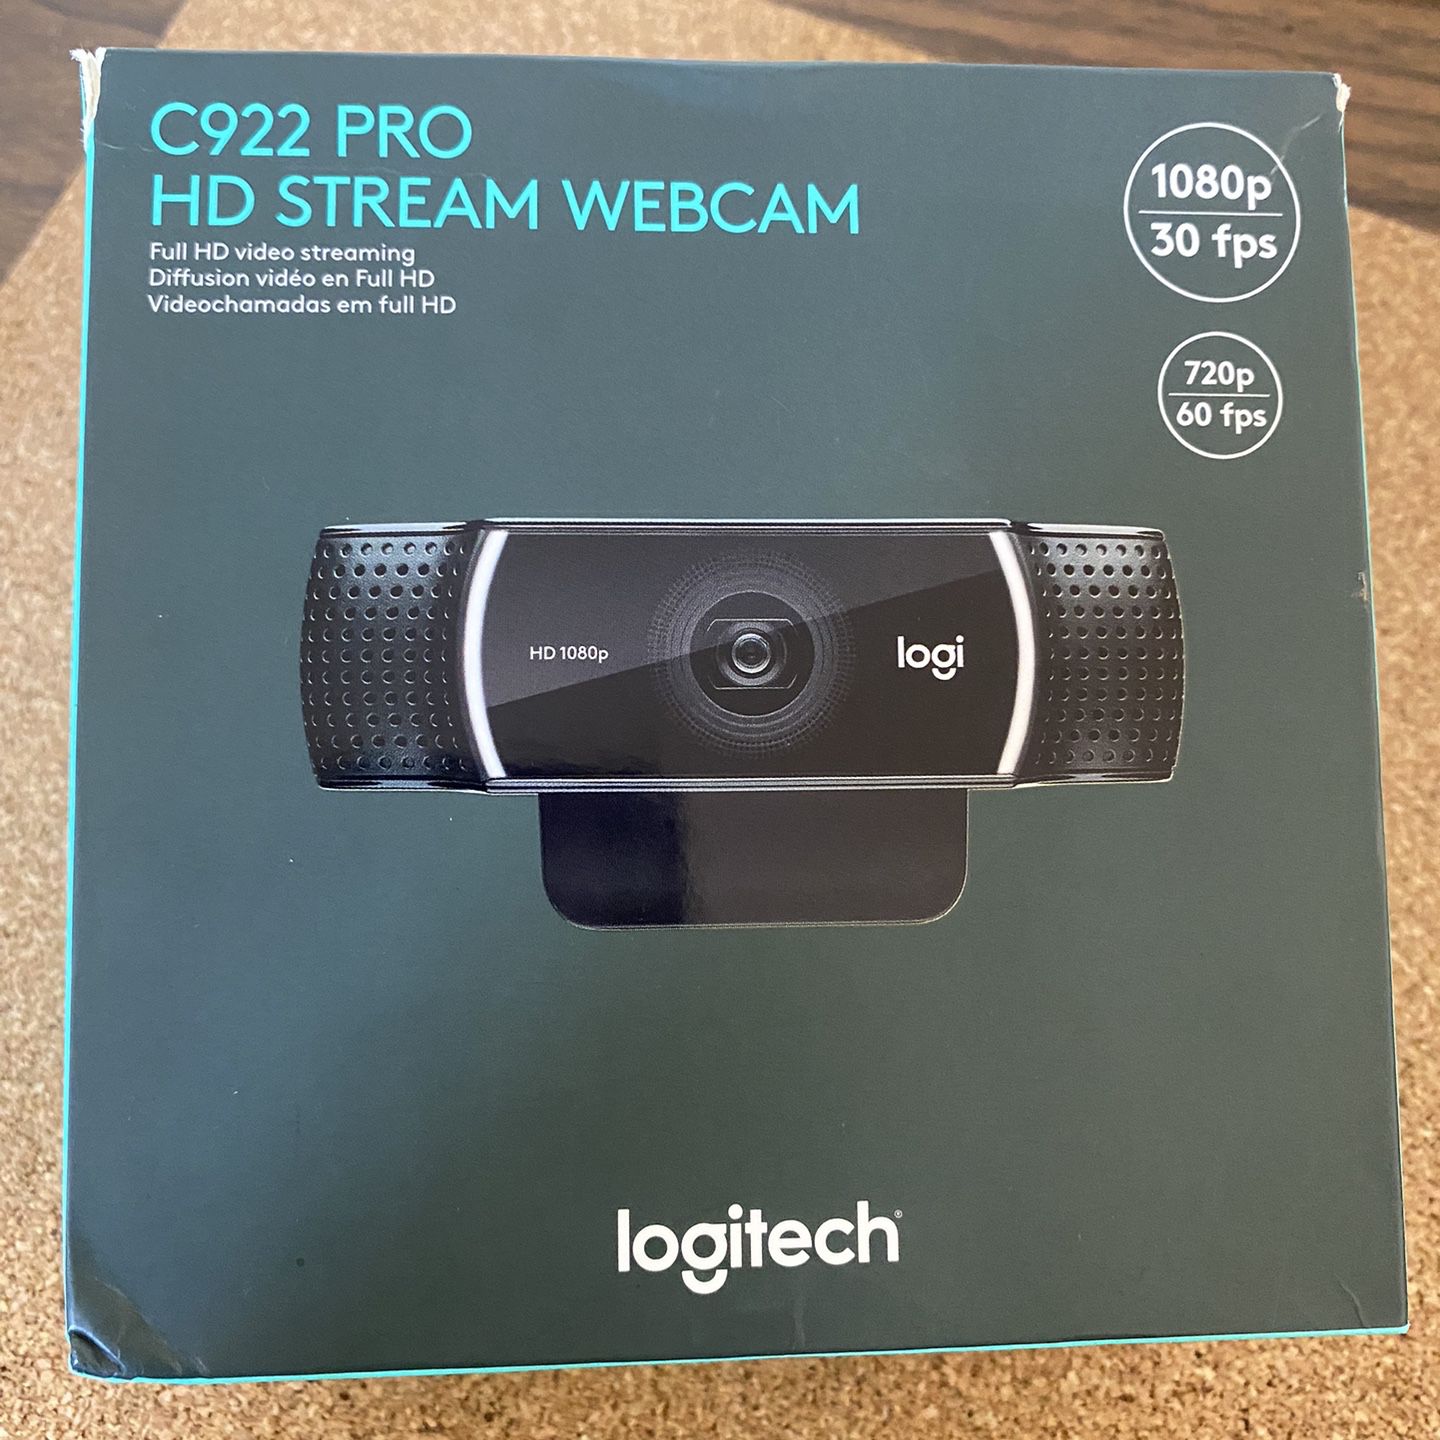 $110–C922 Pro HD Stream Webcam